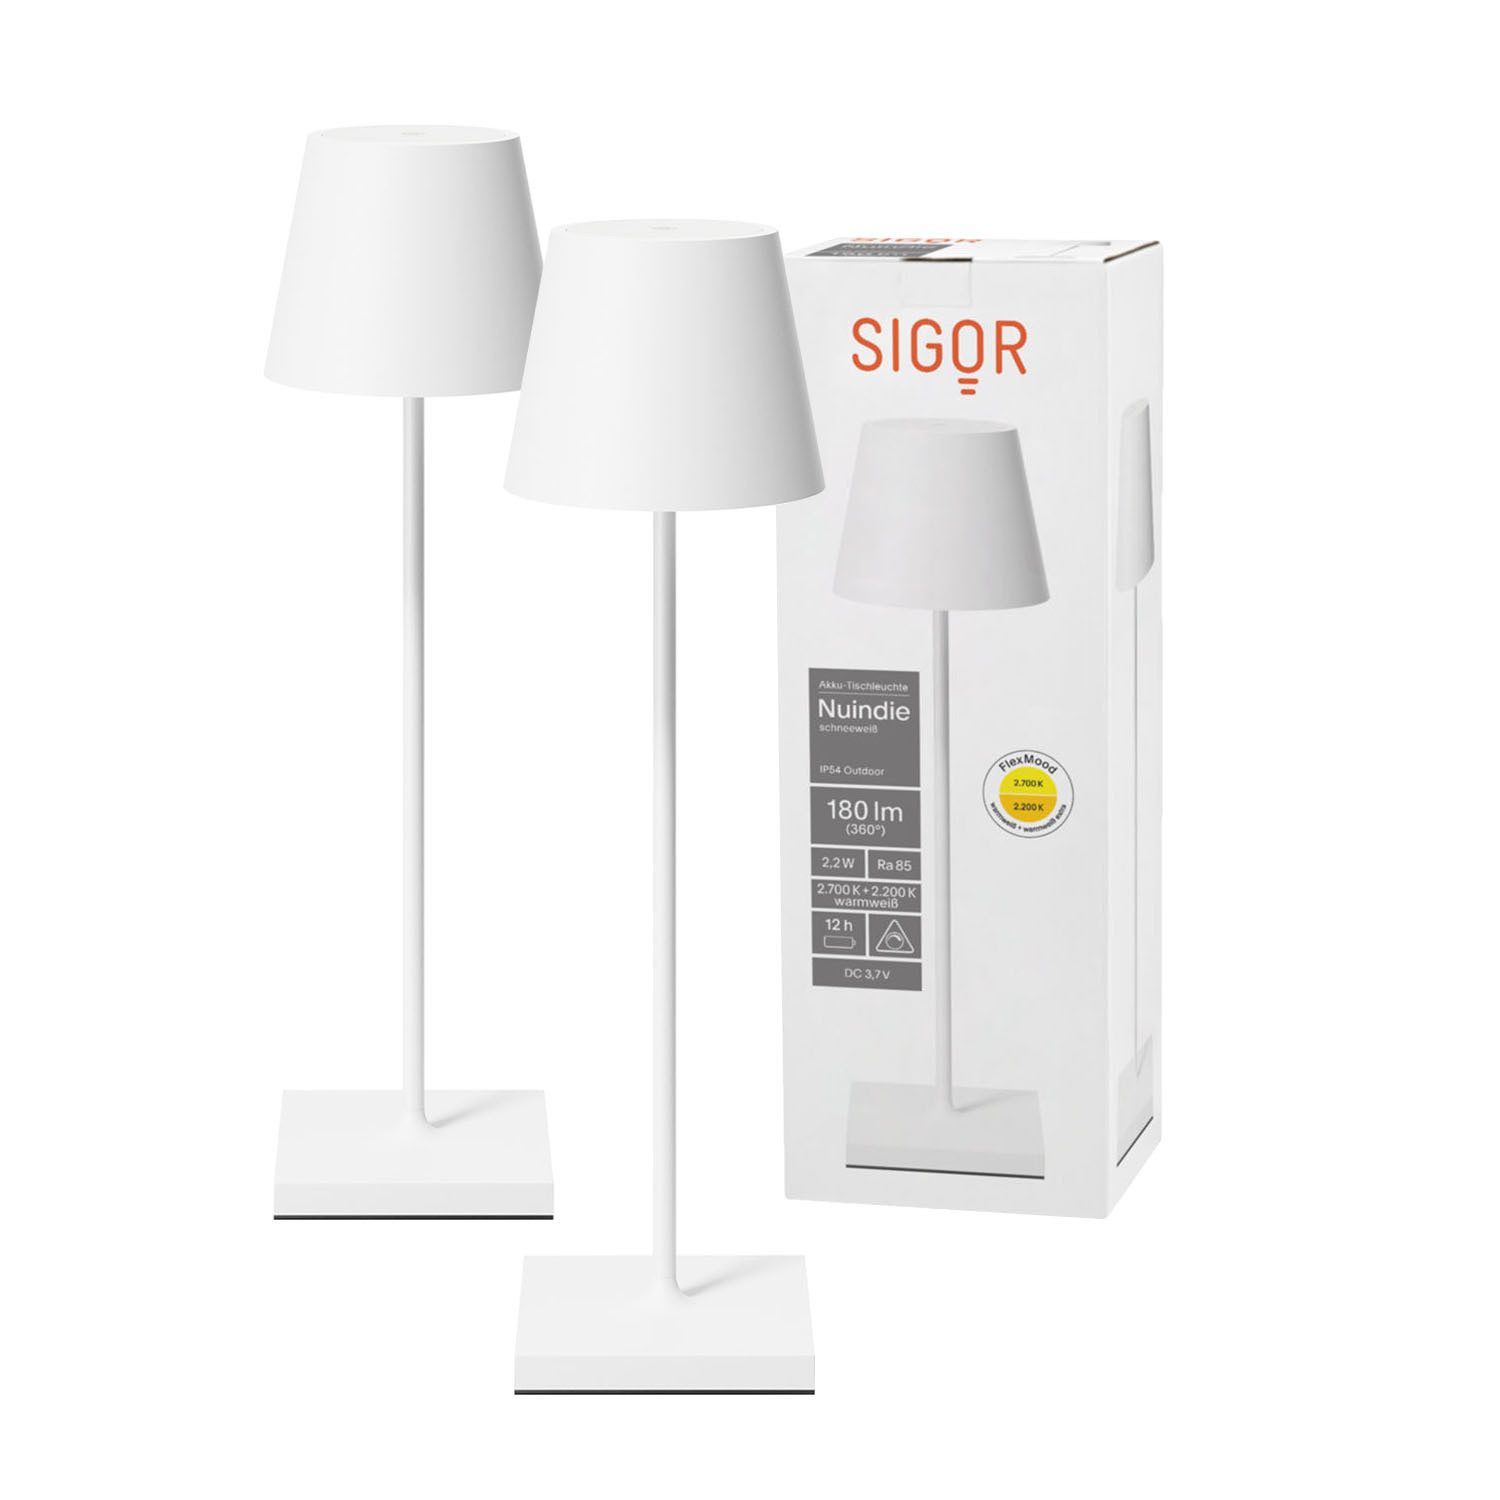 SIGOR LED Tischleuchte 2x Nuindie USB-C 380mm schneeweiß, Dimmbar, 1 LED Platine, 2.700 K / 2.200 K